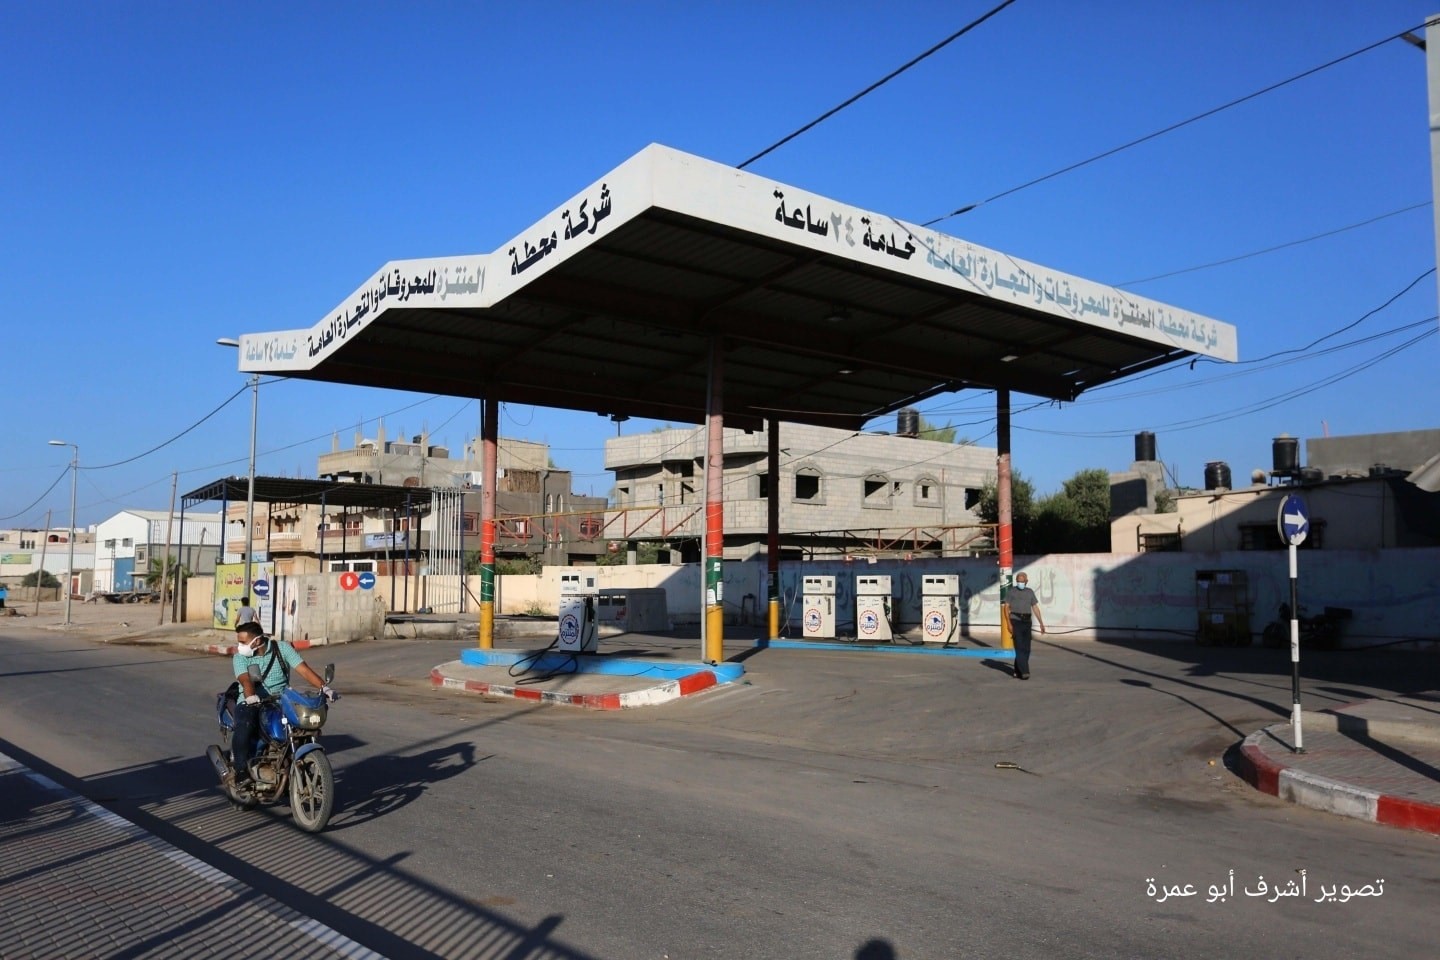 استمرار فرض حظر التجول في قطاع غزة إثر تفشي فيروس "كورونا"